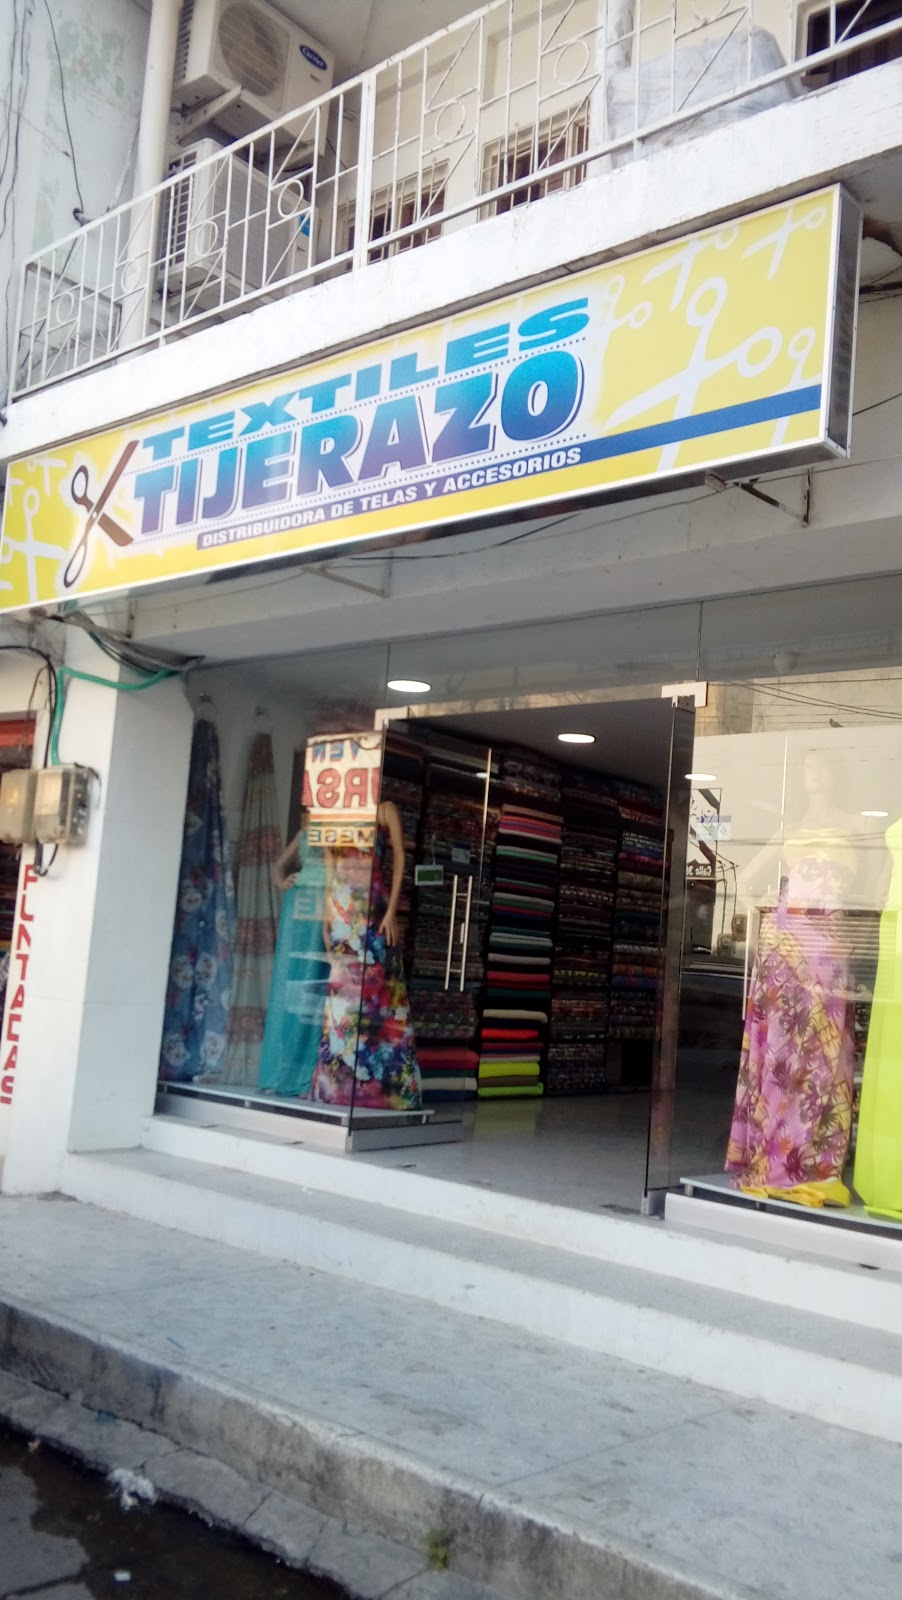 Textiles Tijerazo